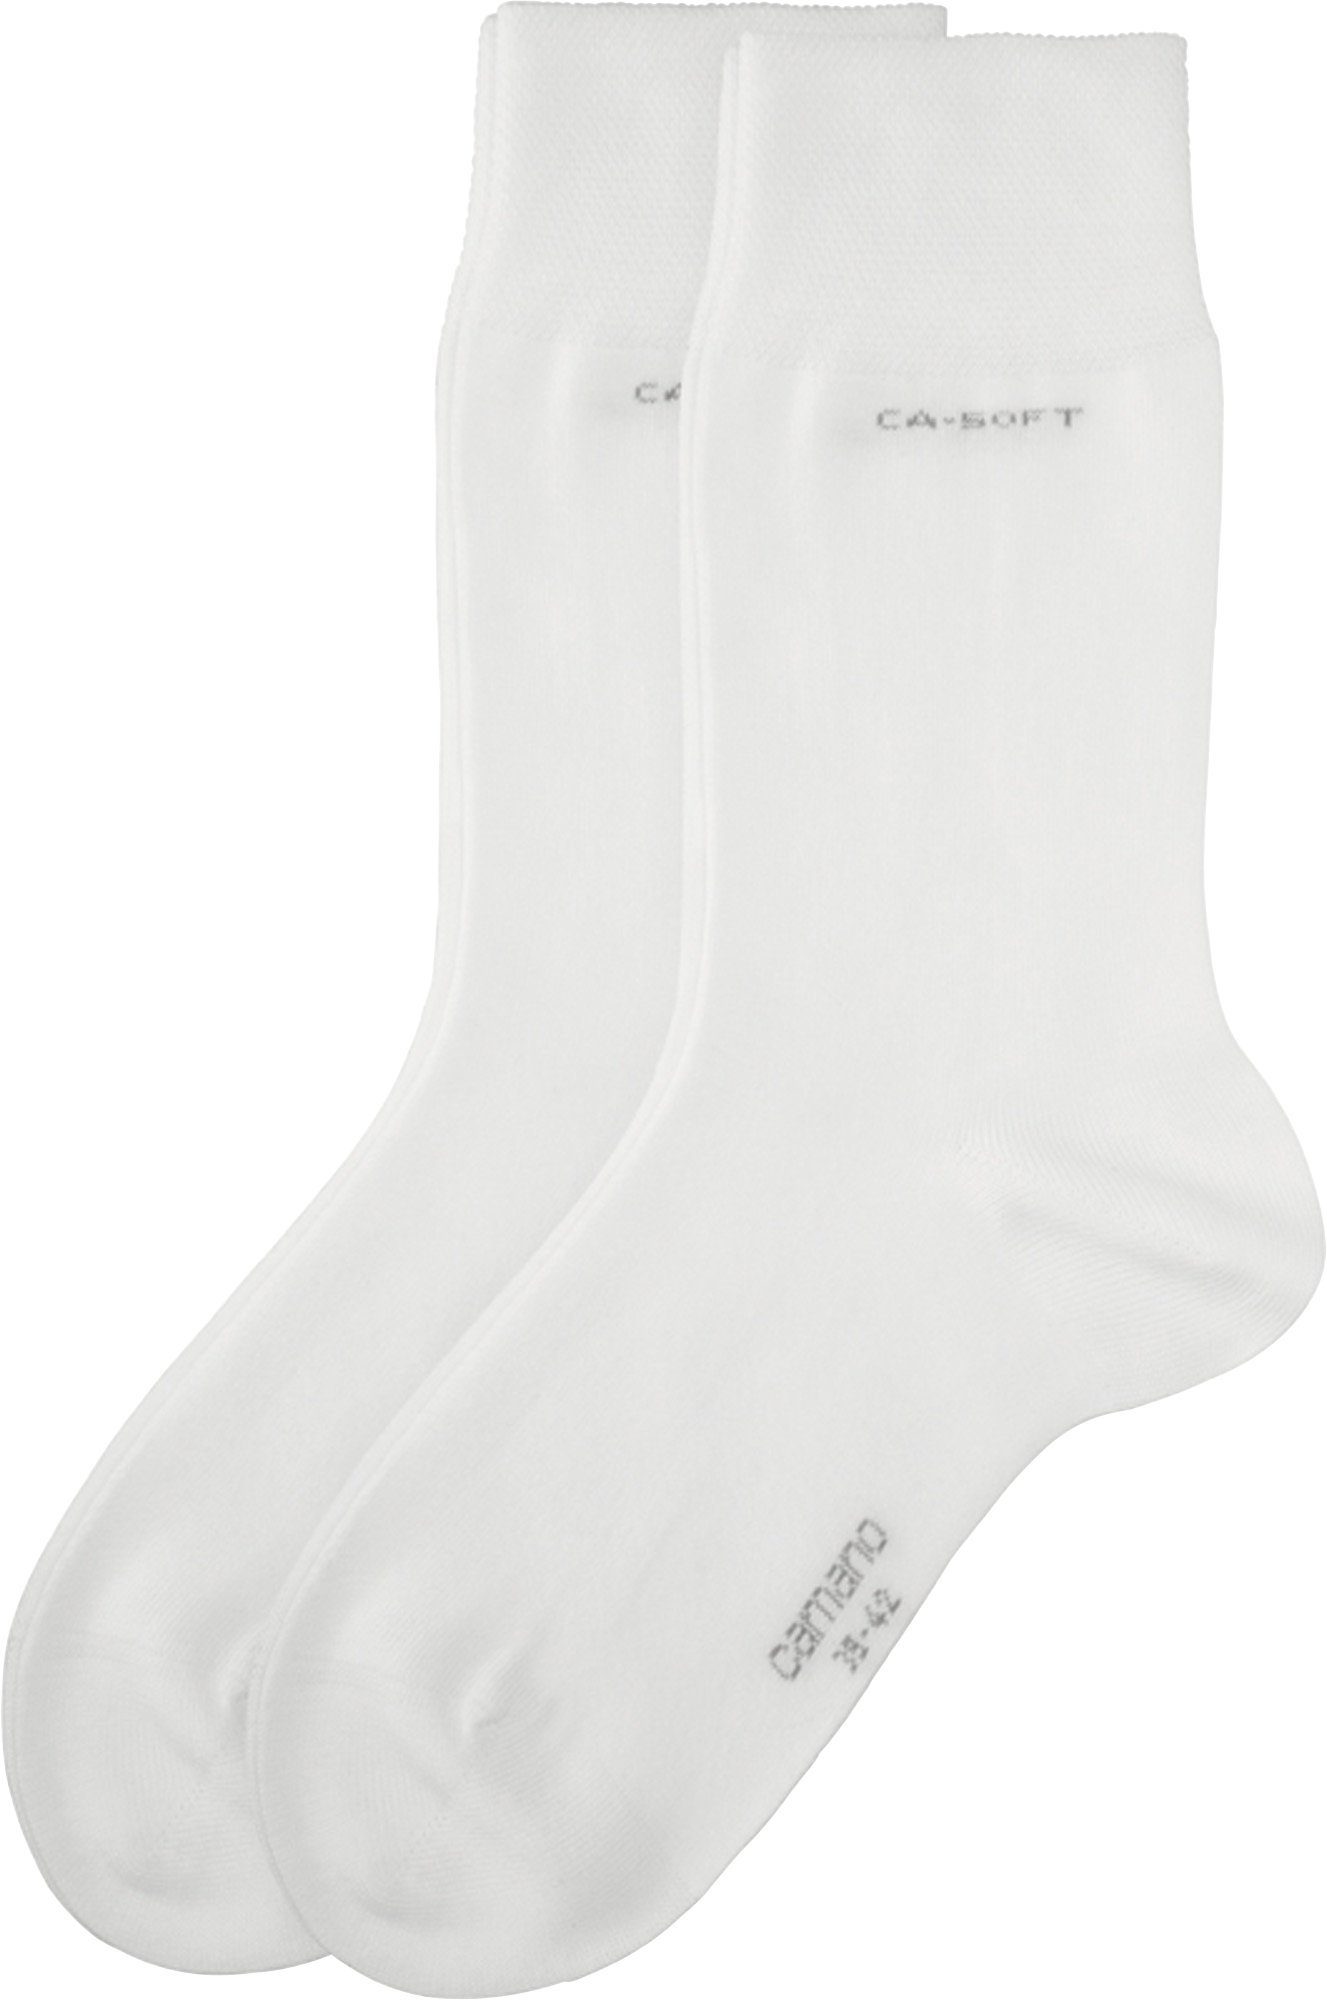 Camano mit Uni Softbund Unisex-Socken Socken weiß 2 Paar